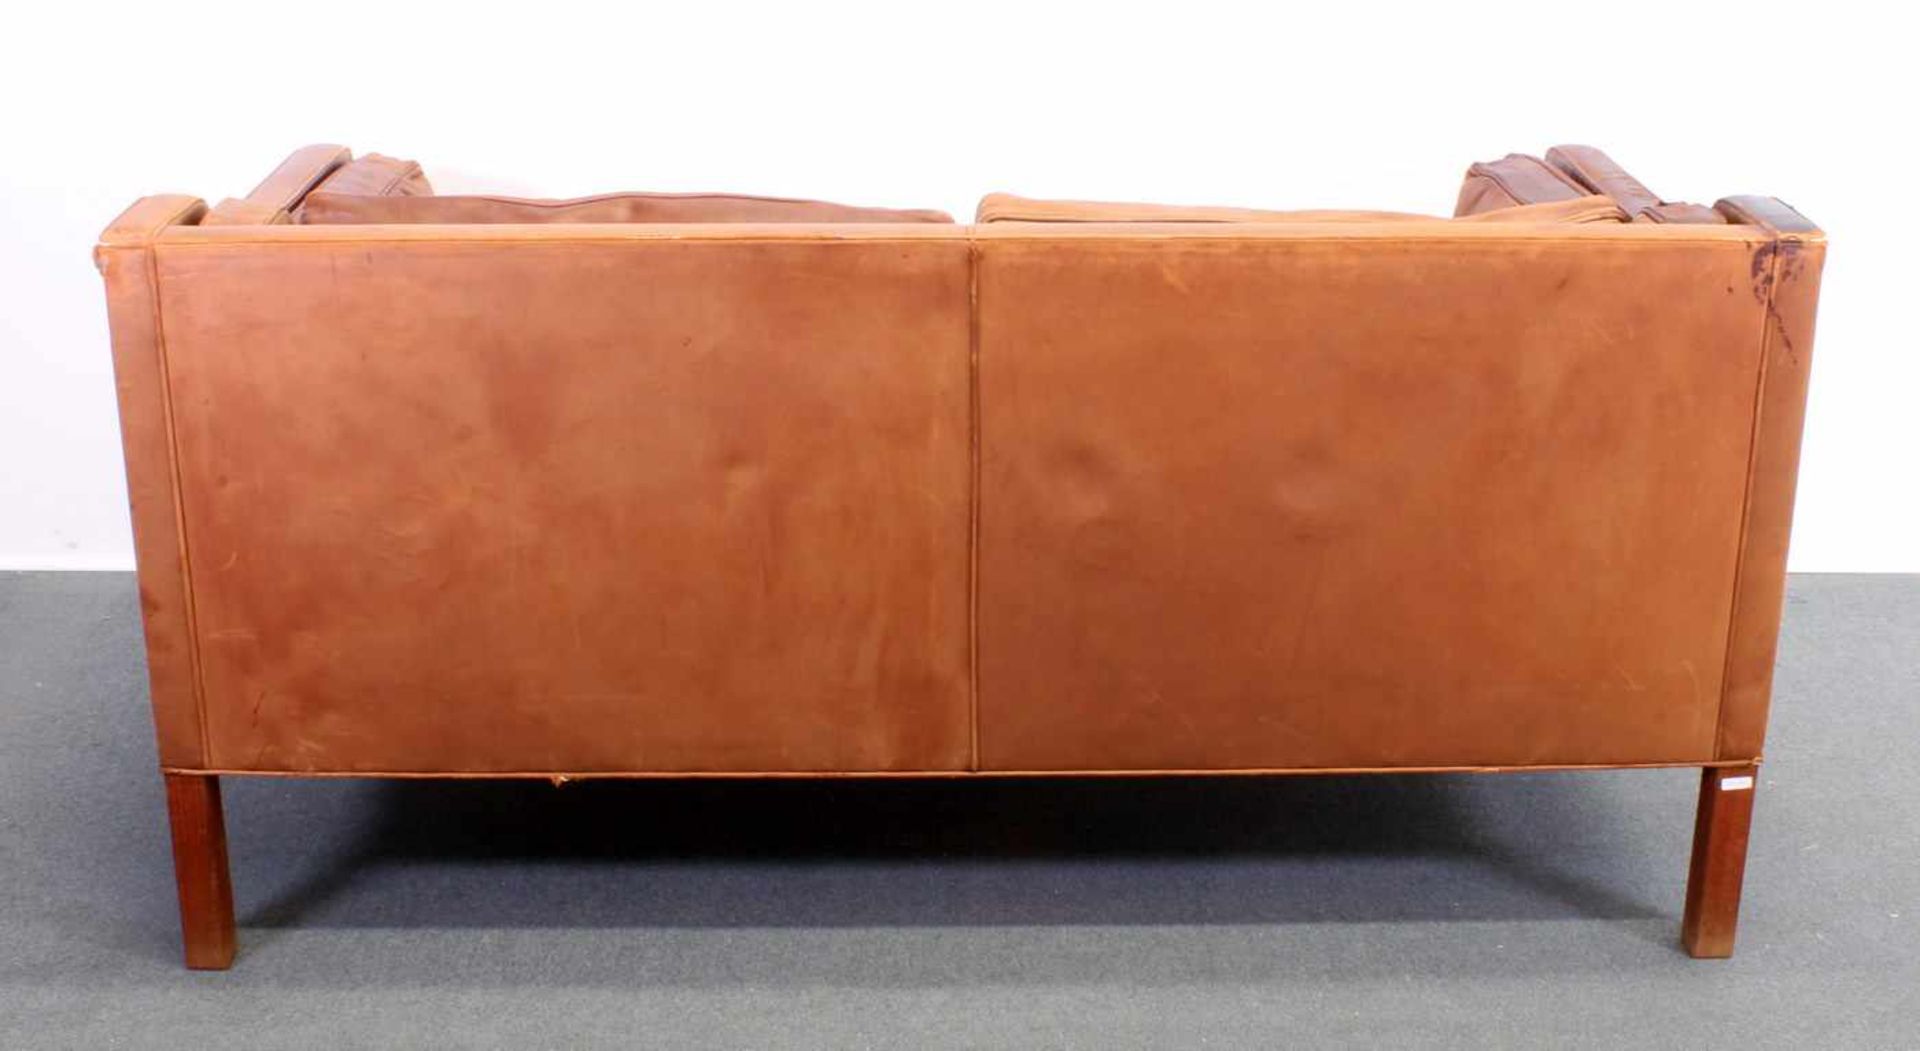 Zweisitzer-Sofa, Design Børge Mogensen (1914-1972), Dänemark, 2. Hälfte 20. Jh., Herstellung - Image 5 of 8